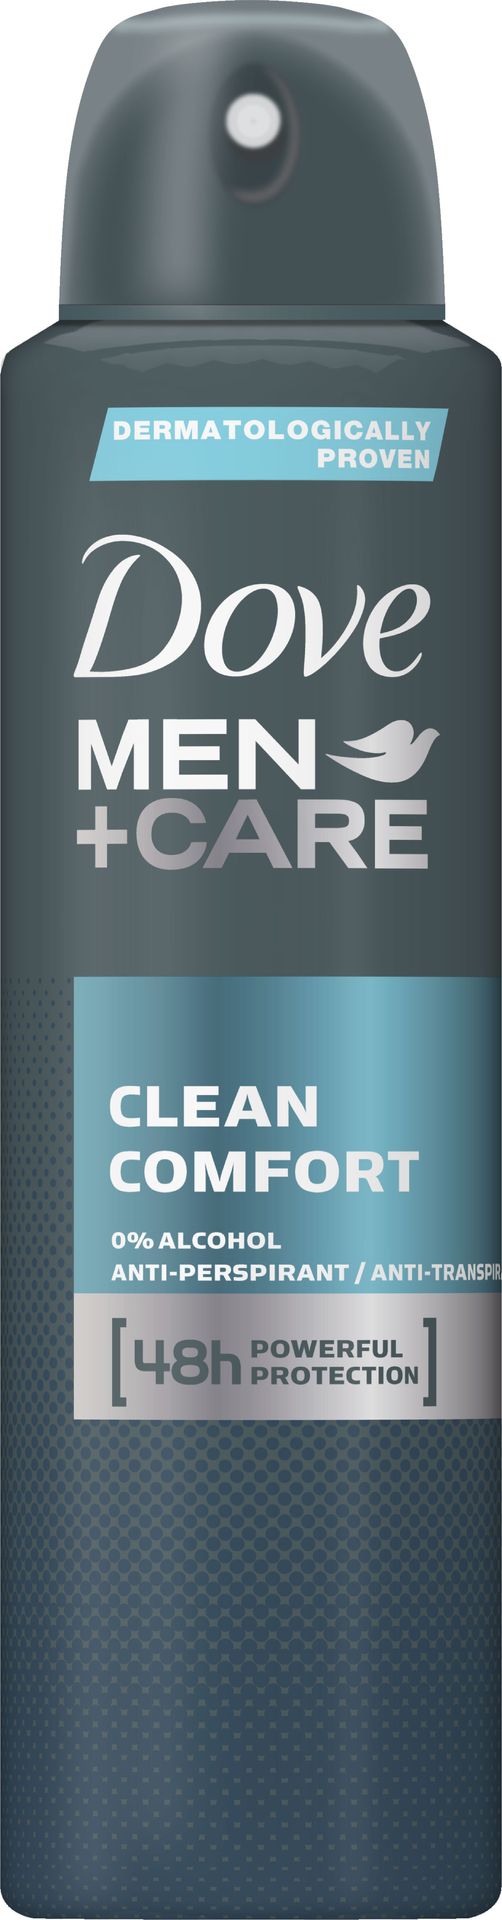 Dove Men + Care Clean Comfort antyperspirant spray 150ml